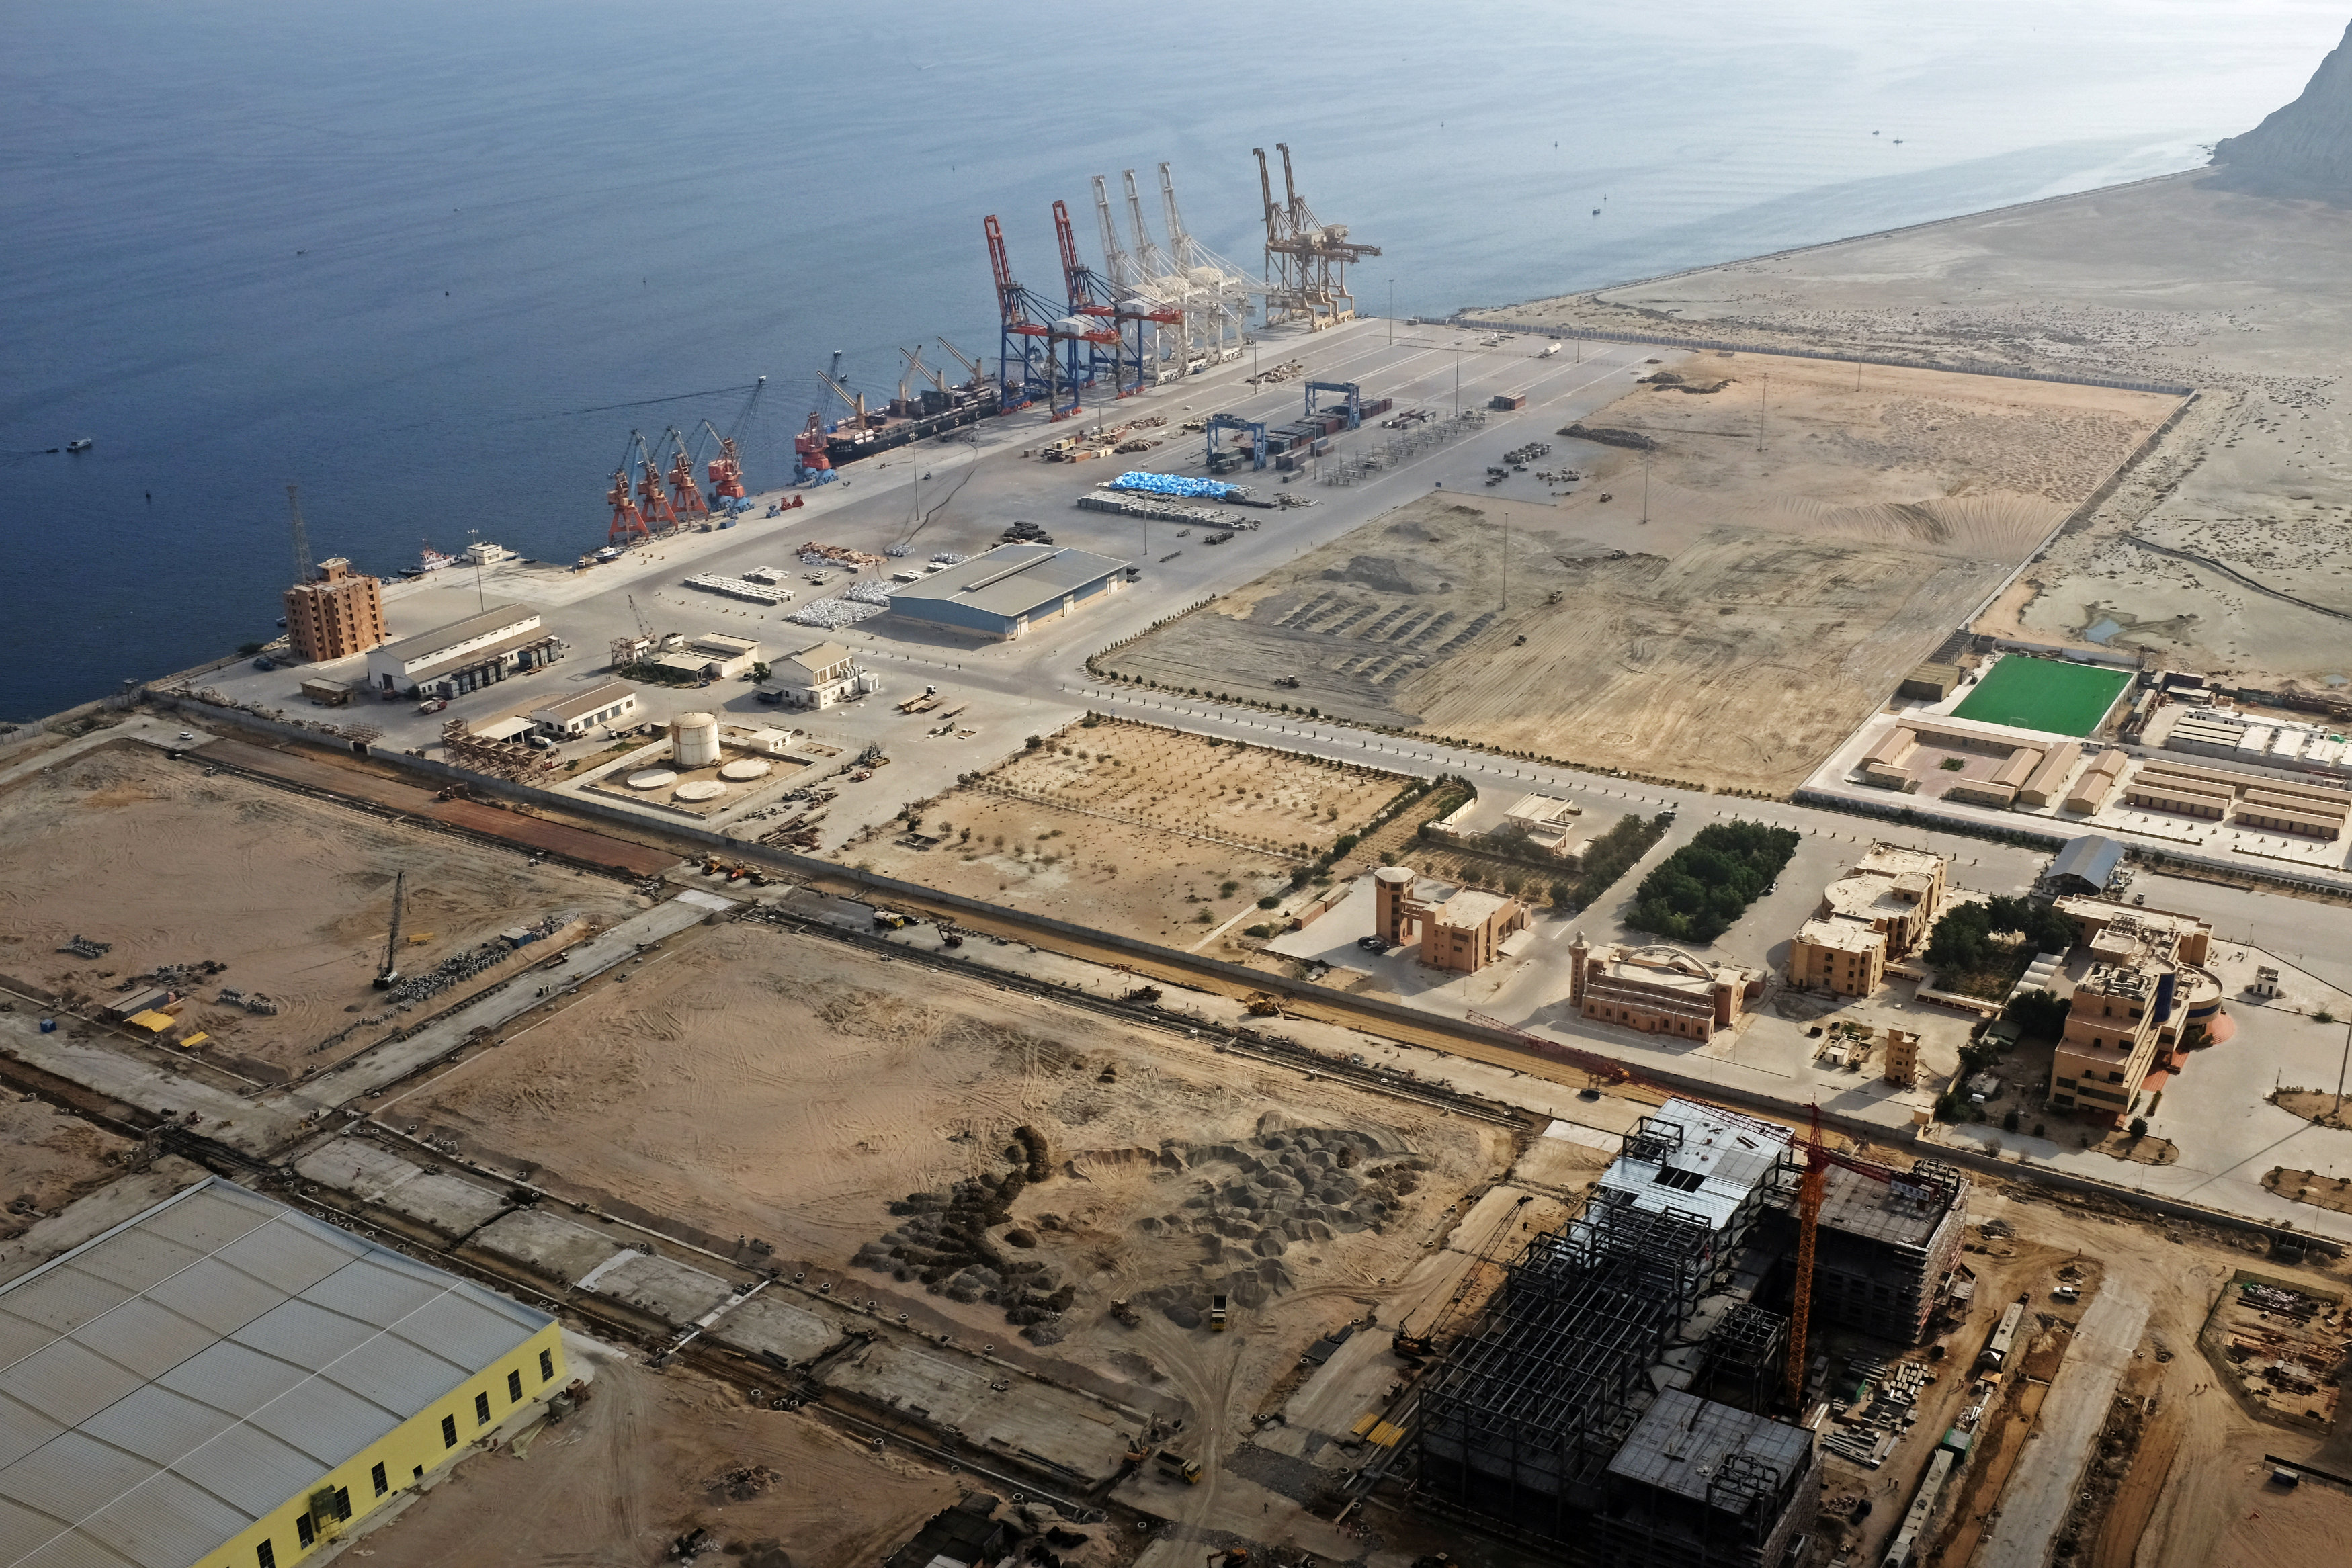 منظر عام لميناء جاودار في باكستان الذي ستنشئ فيه السعودية مصفاة نفط، 4 أكتوبر 2017. درازان جورجيتش/ رويترز